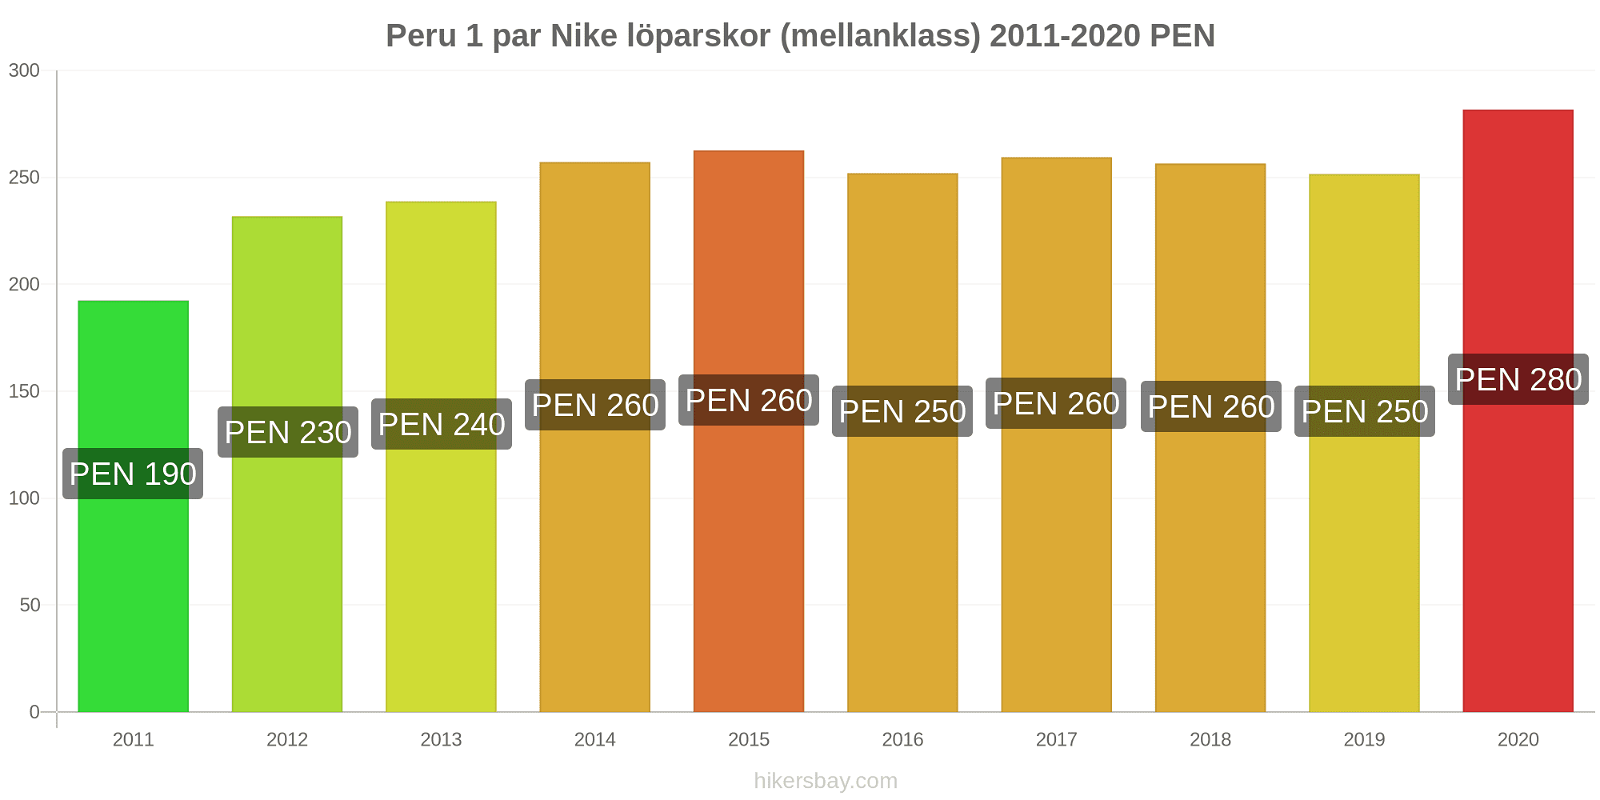 Peru prisförändringar 1 par Nike löparskor (mellanklass) hikersbay.com